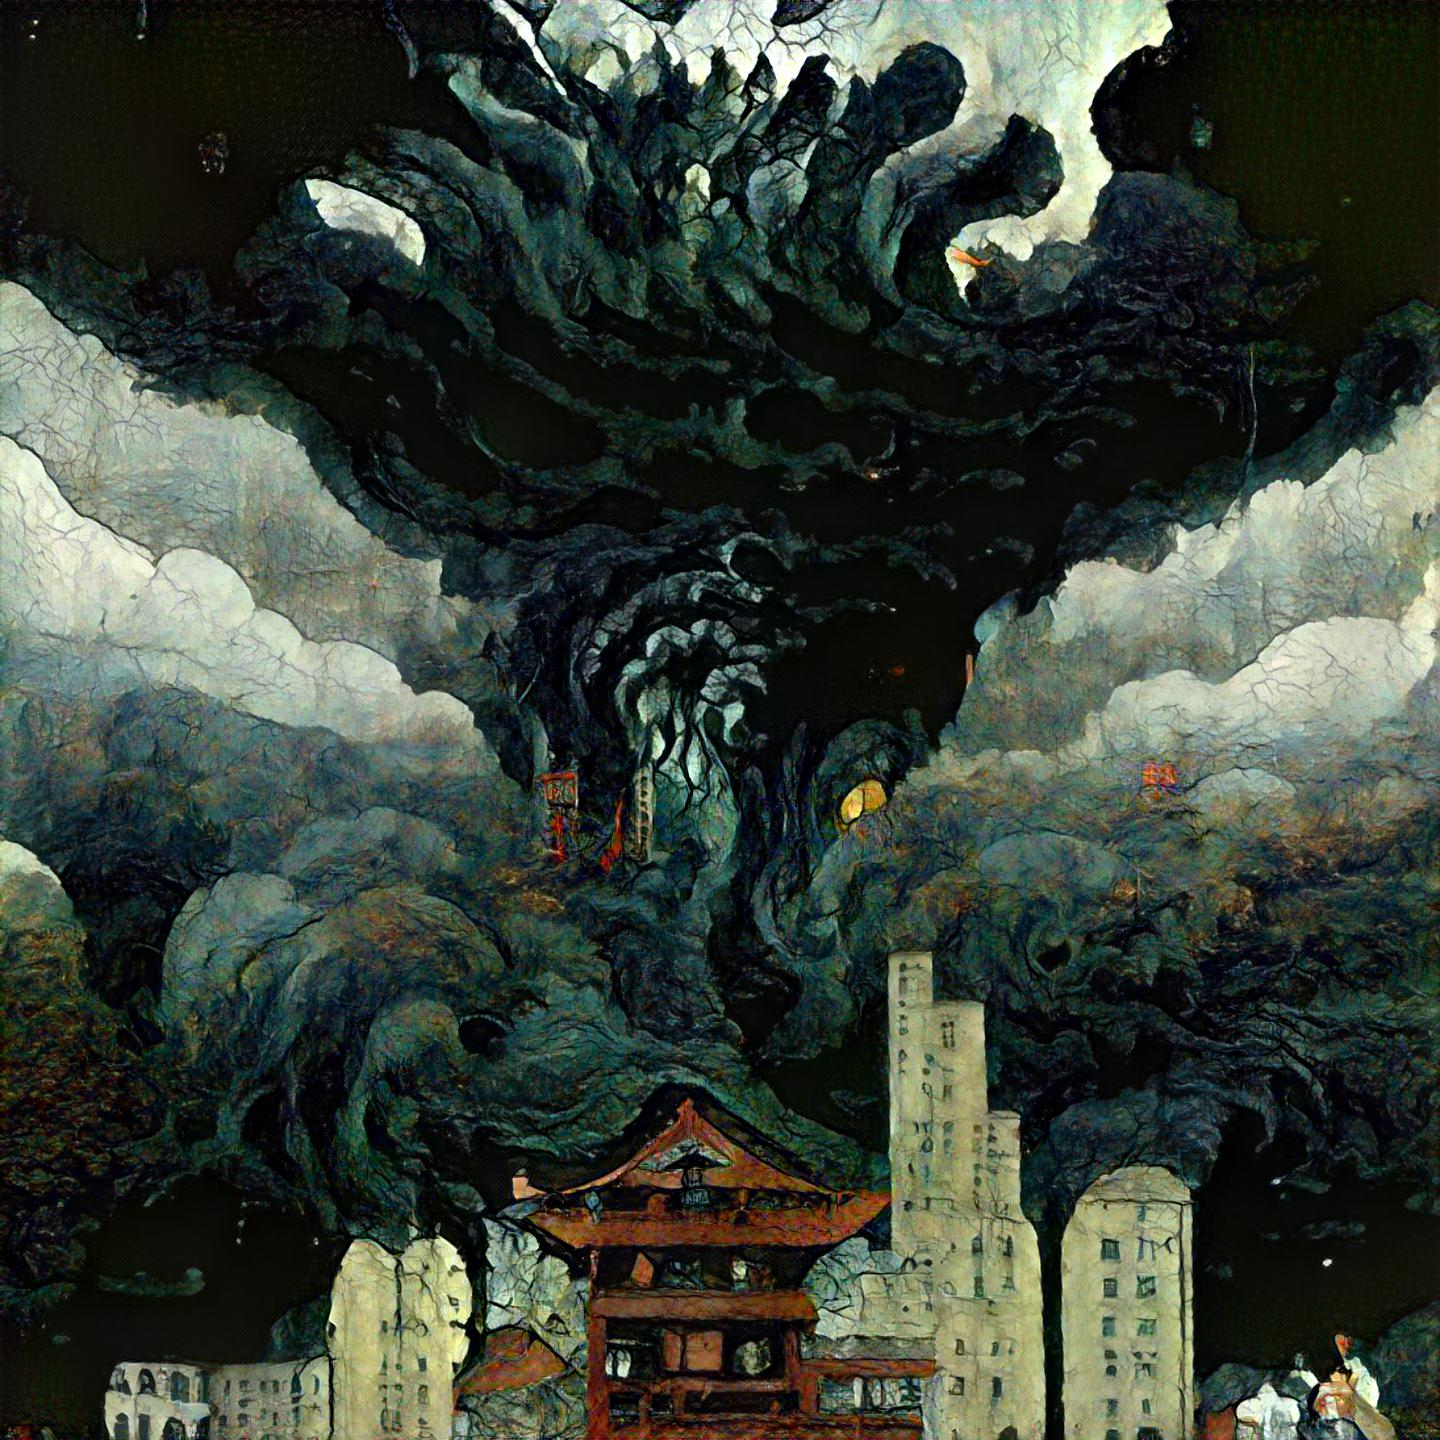 Smoke Monster (attempting ukiyo-e style)